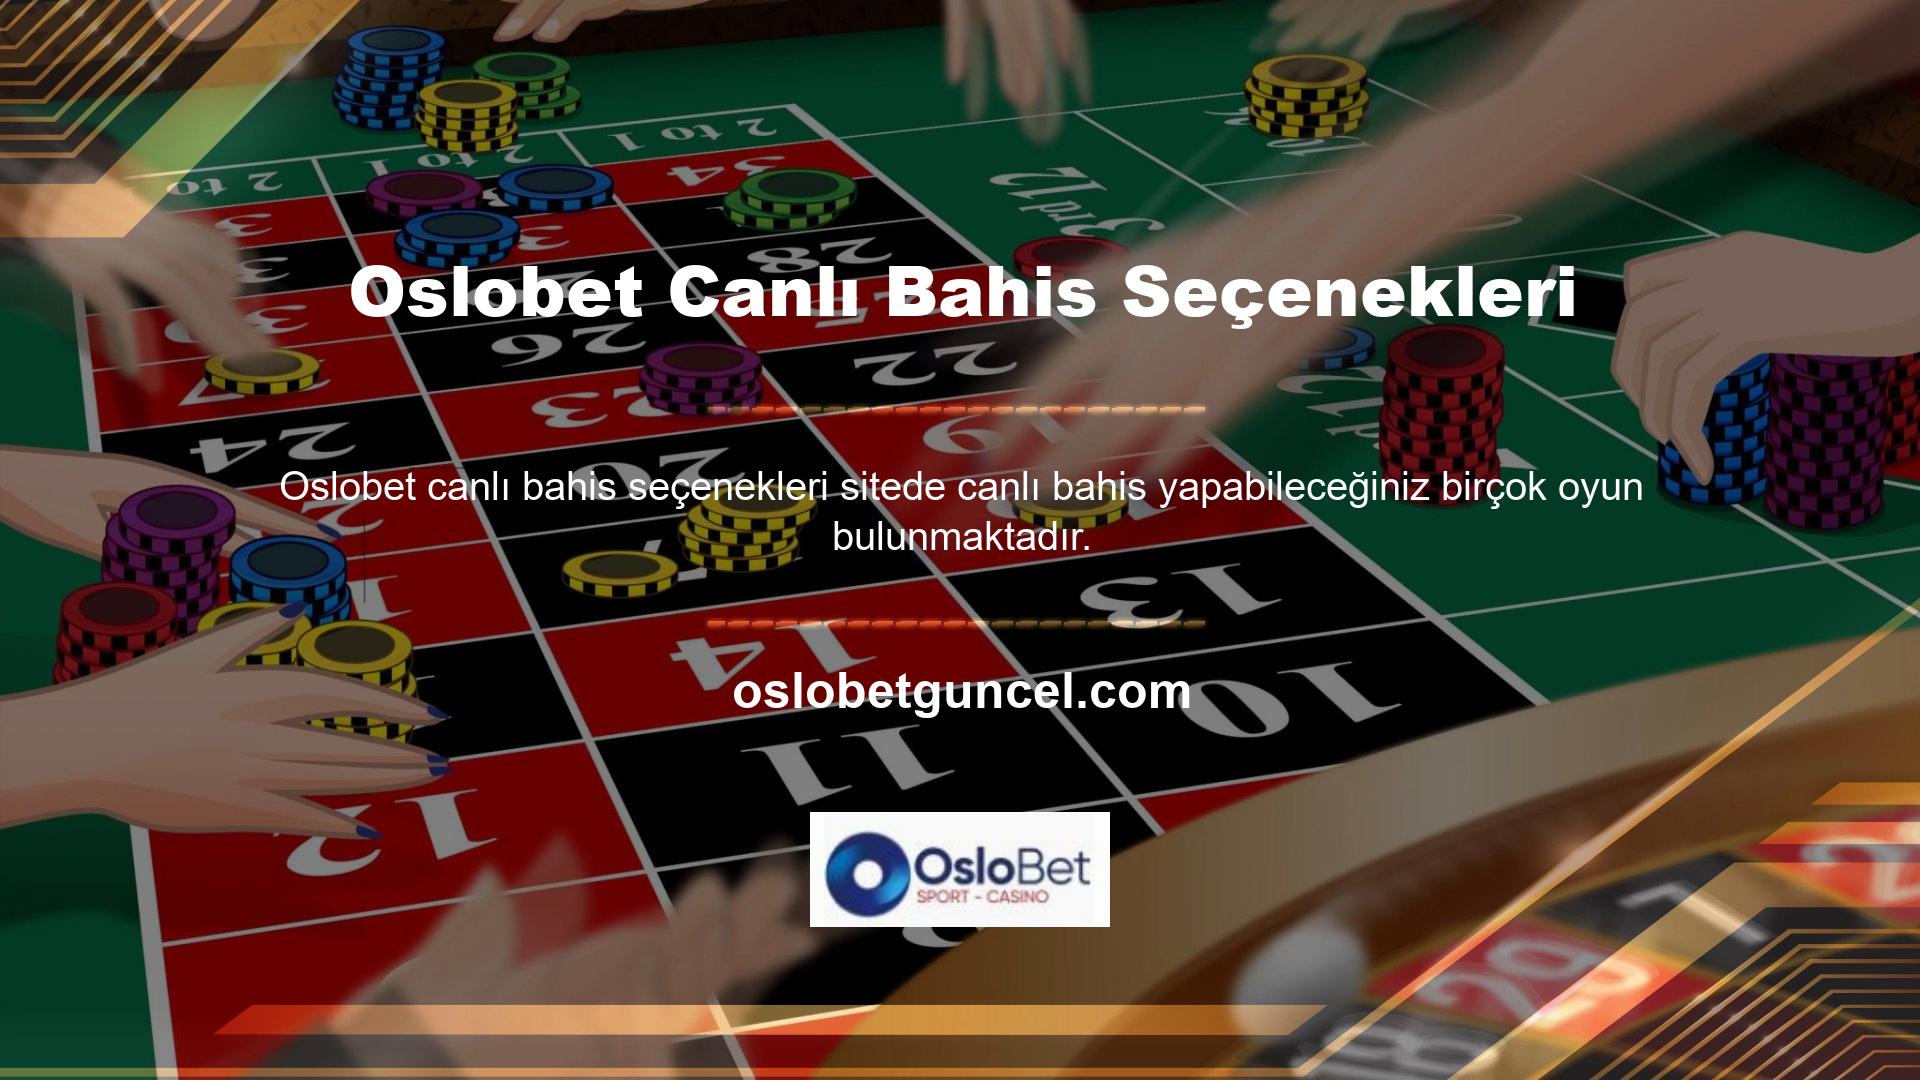 “Casino Oyunları” seçeneği bingo oyunları ve sanal oyunlar oynamanıza olanak sağlar